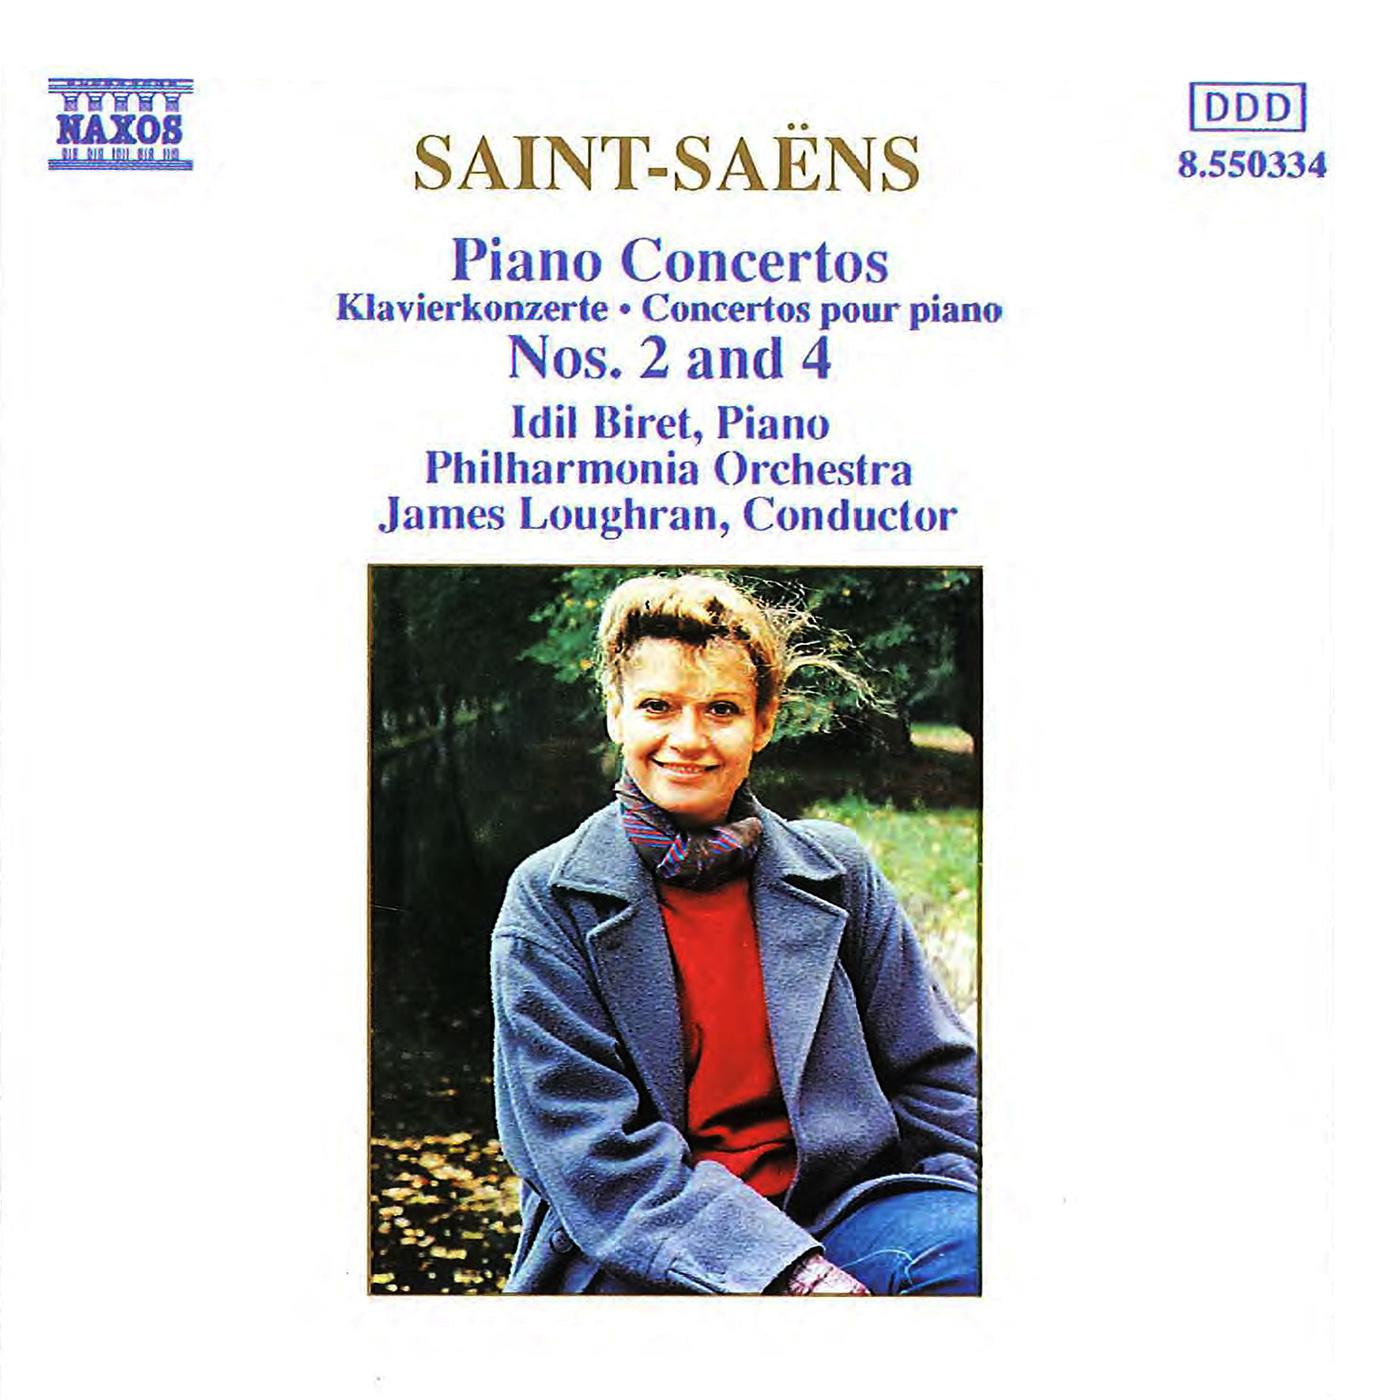 SAINT-SAENS: Piano Concertos Nos. 2 and 4